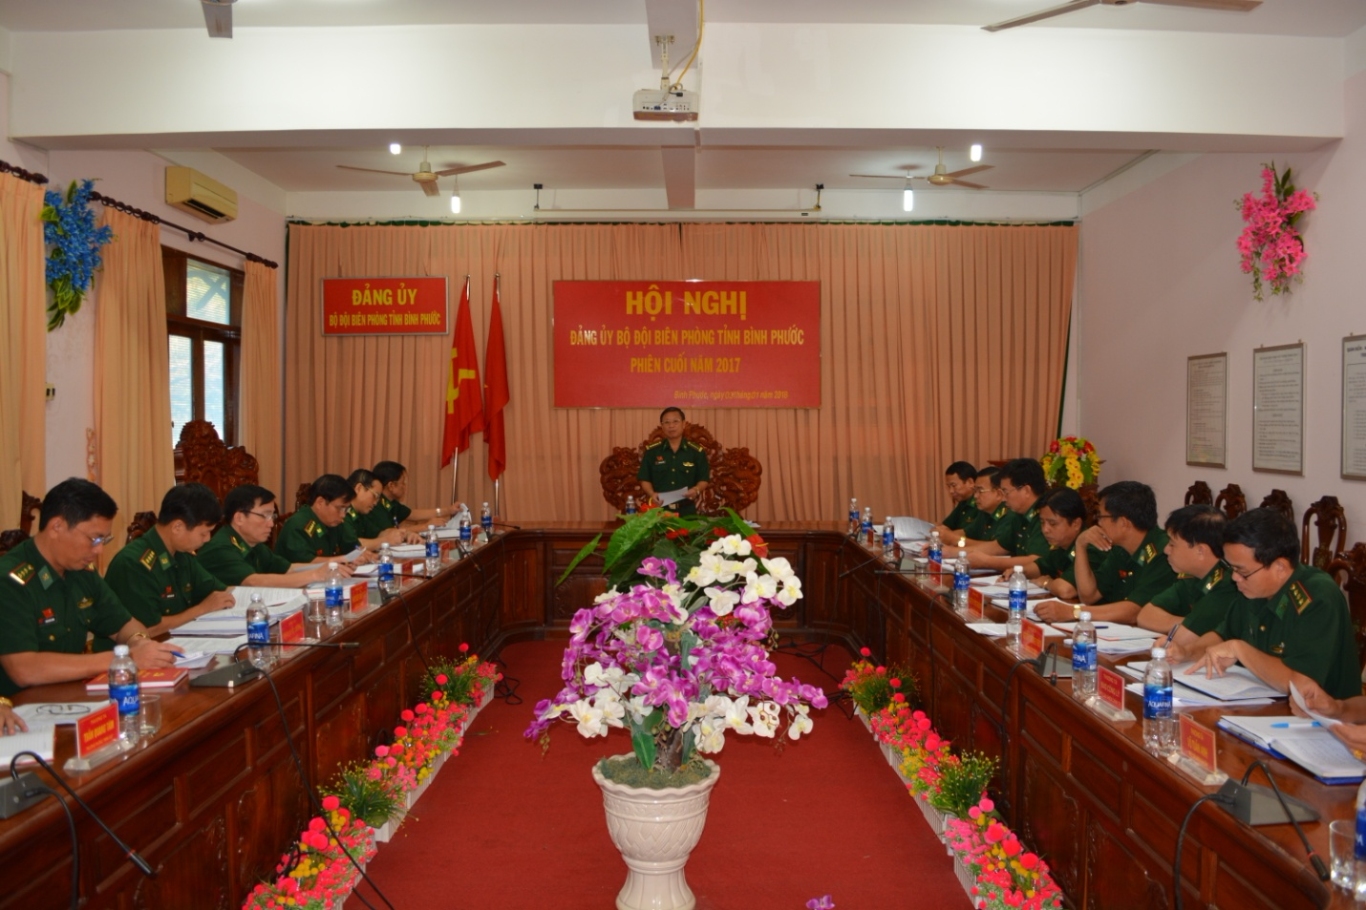 Đại tá Nguyễn Văn Phương – Bí thư Đảng ủy, Chính ủy BĐBP Bình Phước kết luận Hội nghị